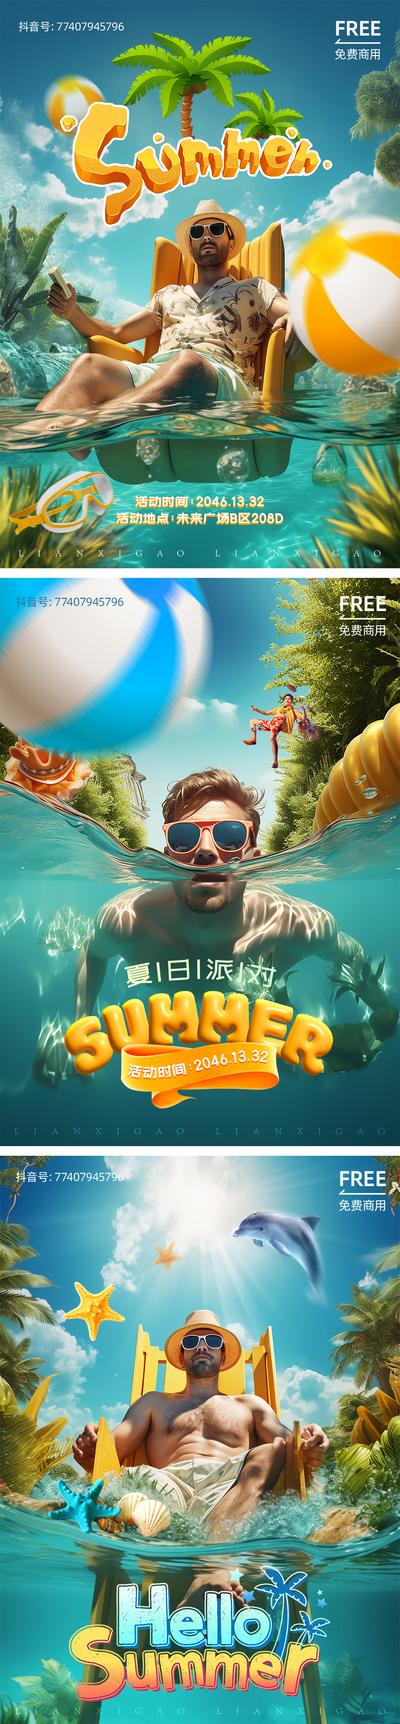 南门网 海报 创意 泳池 派对 设计 水乐园 水世界 乐园 游乐场 度假 夏天 夏日